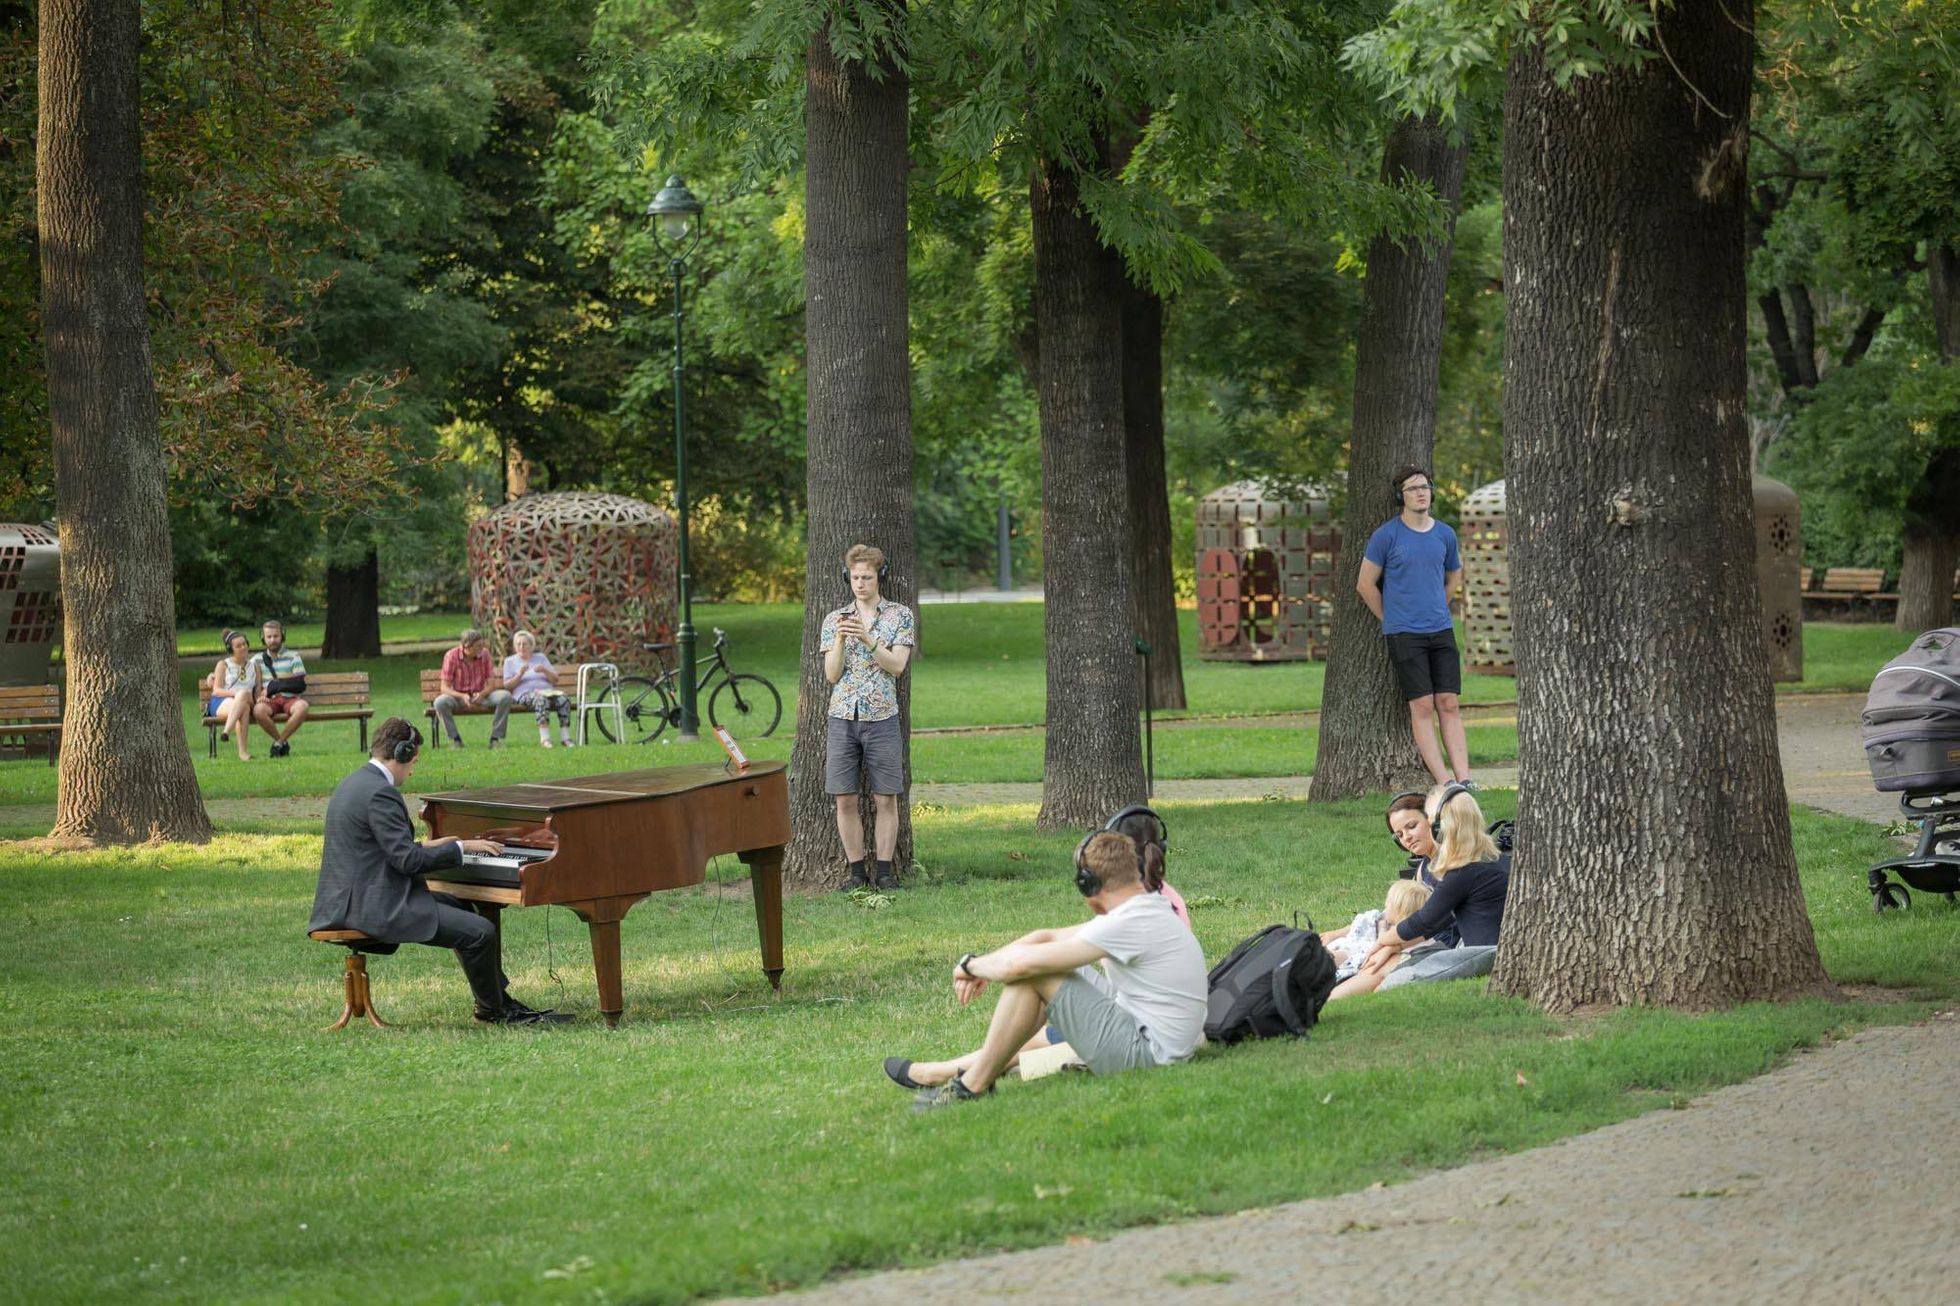 Foto: I tady můžete potkat interprety klasické hudby. V obýváku, v parku i na ulici